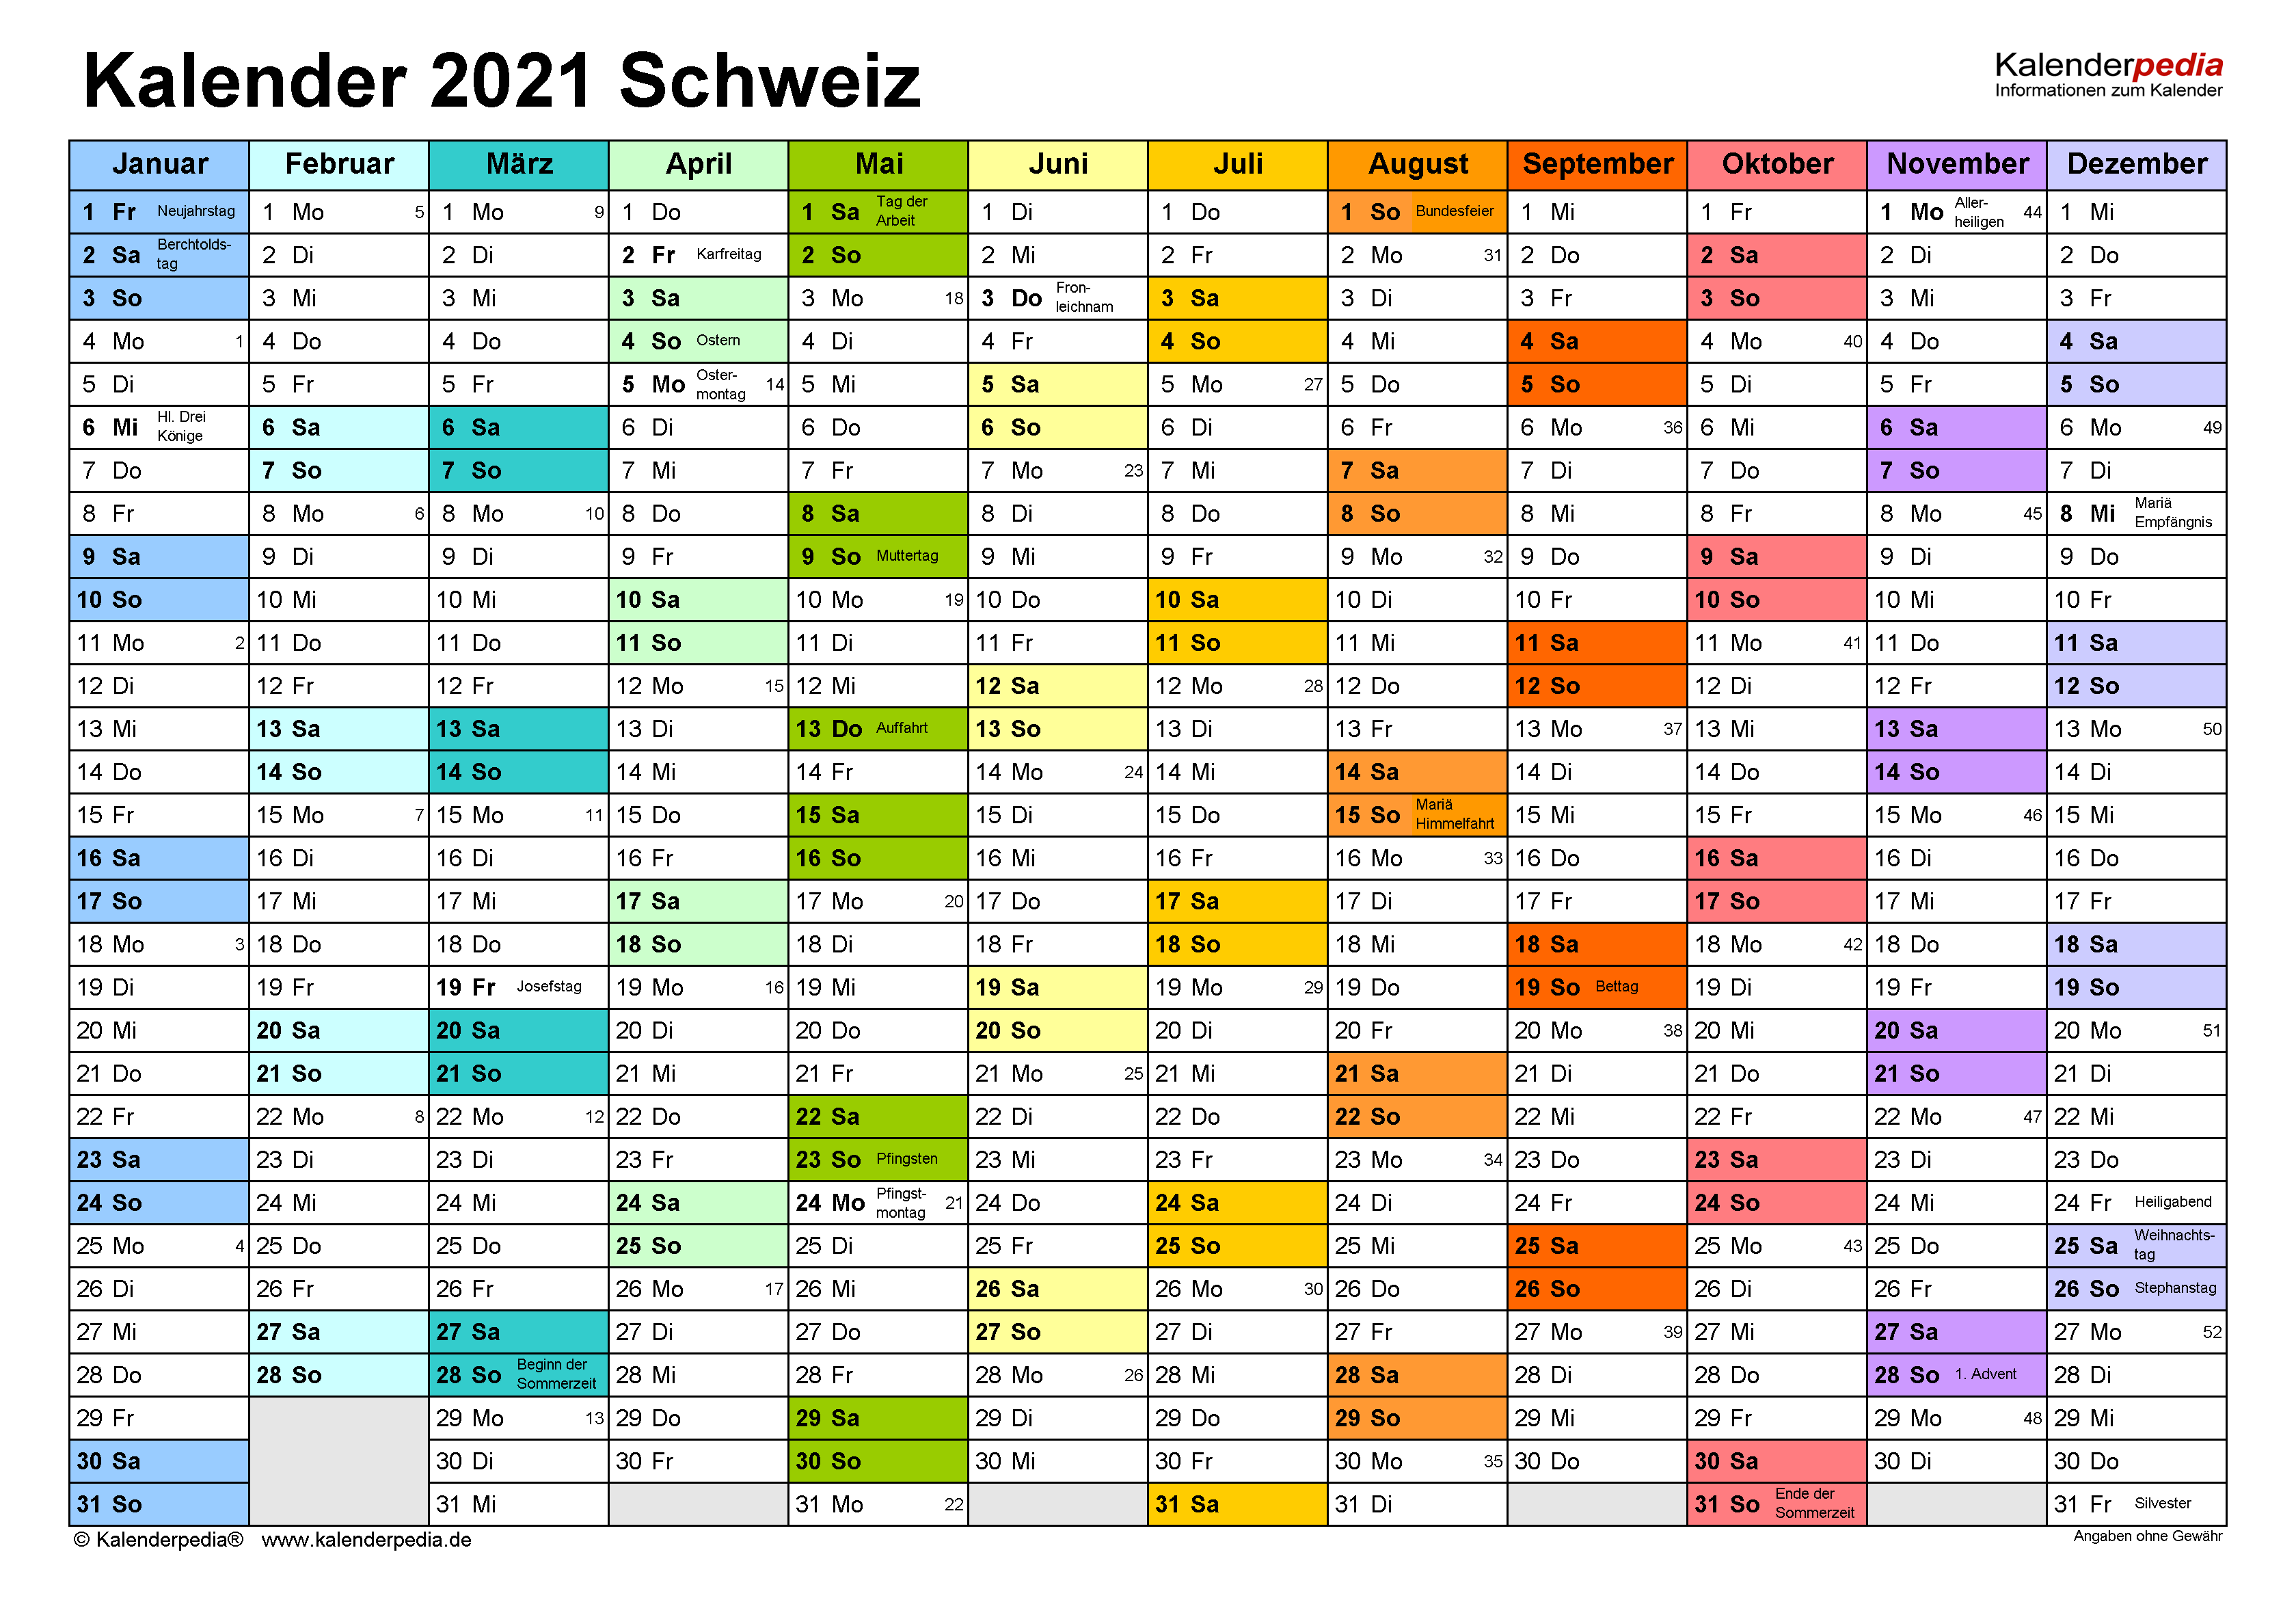 Kalender 2021 Schweiz in Excel zum Ausdrucken